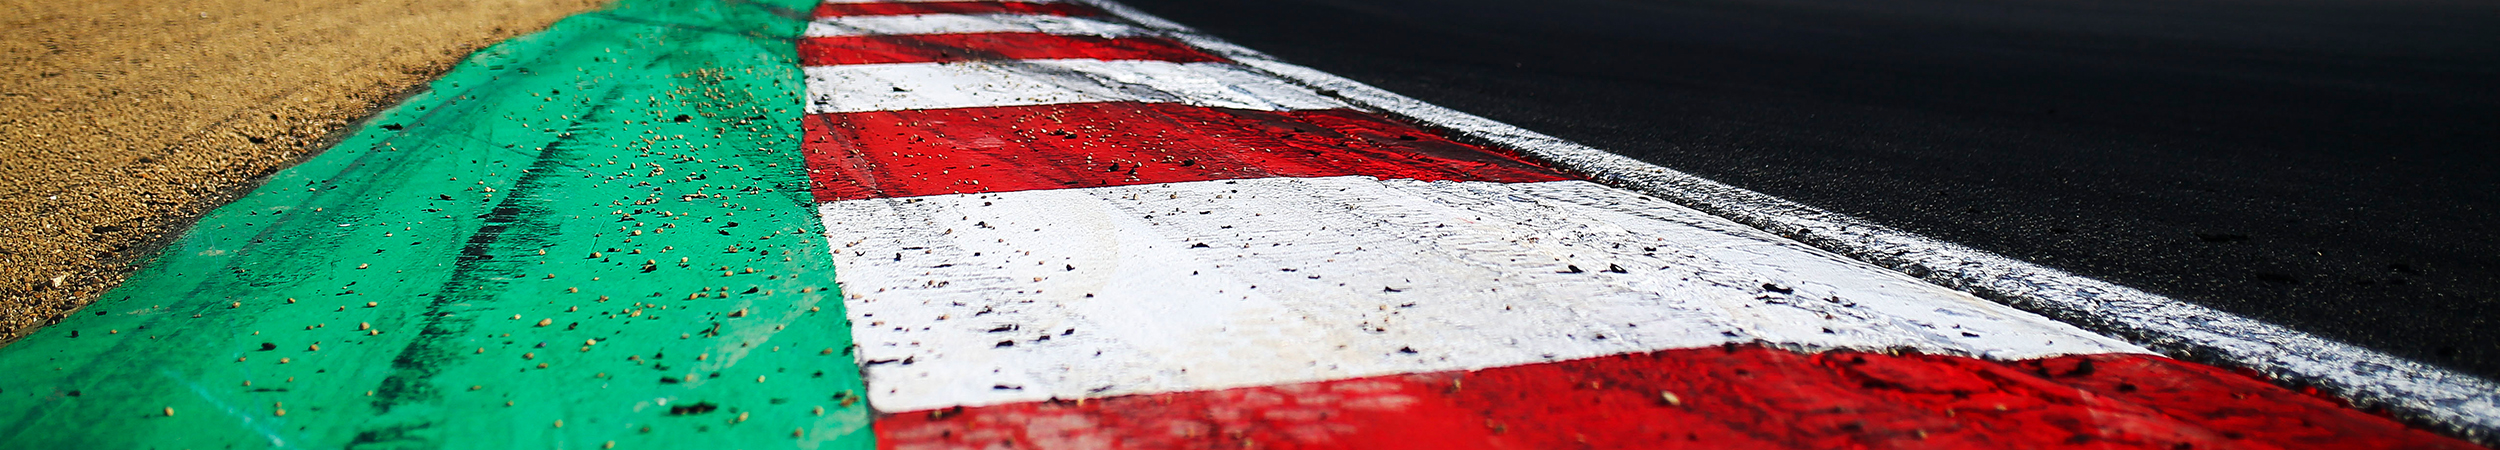 British GT FP1: Hankey/Flewitt McLaren tops Brands Hatch times 